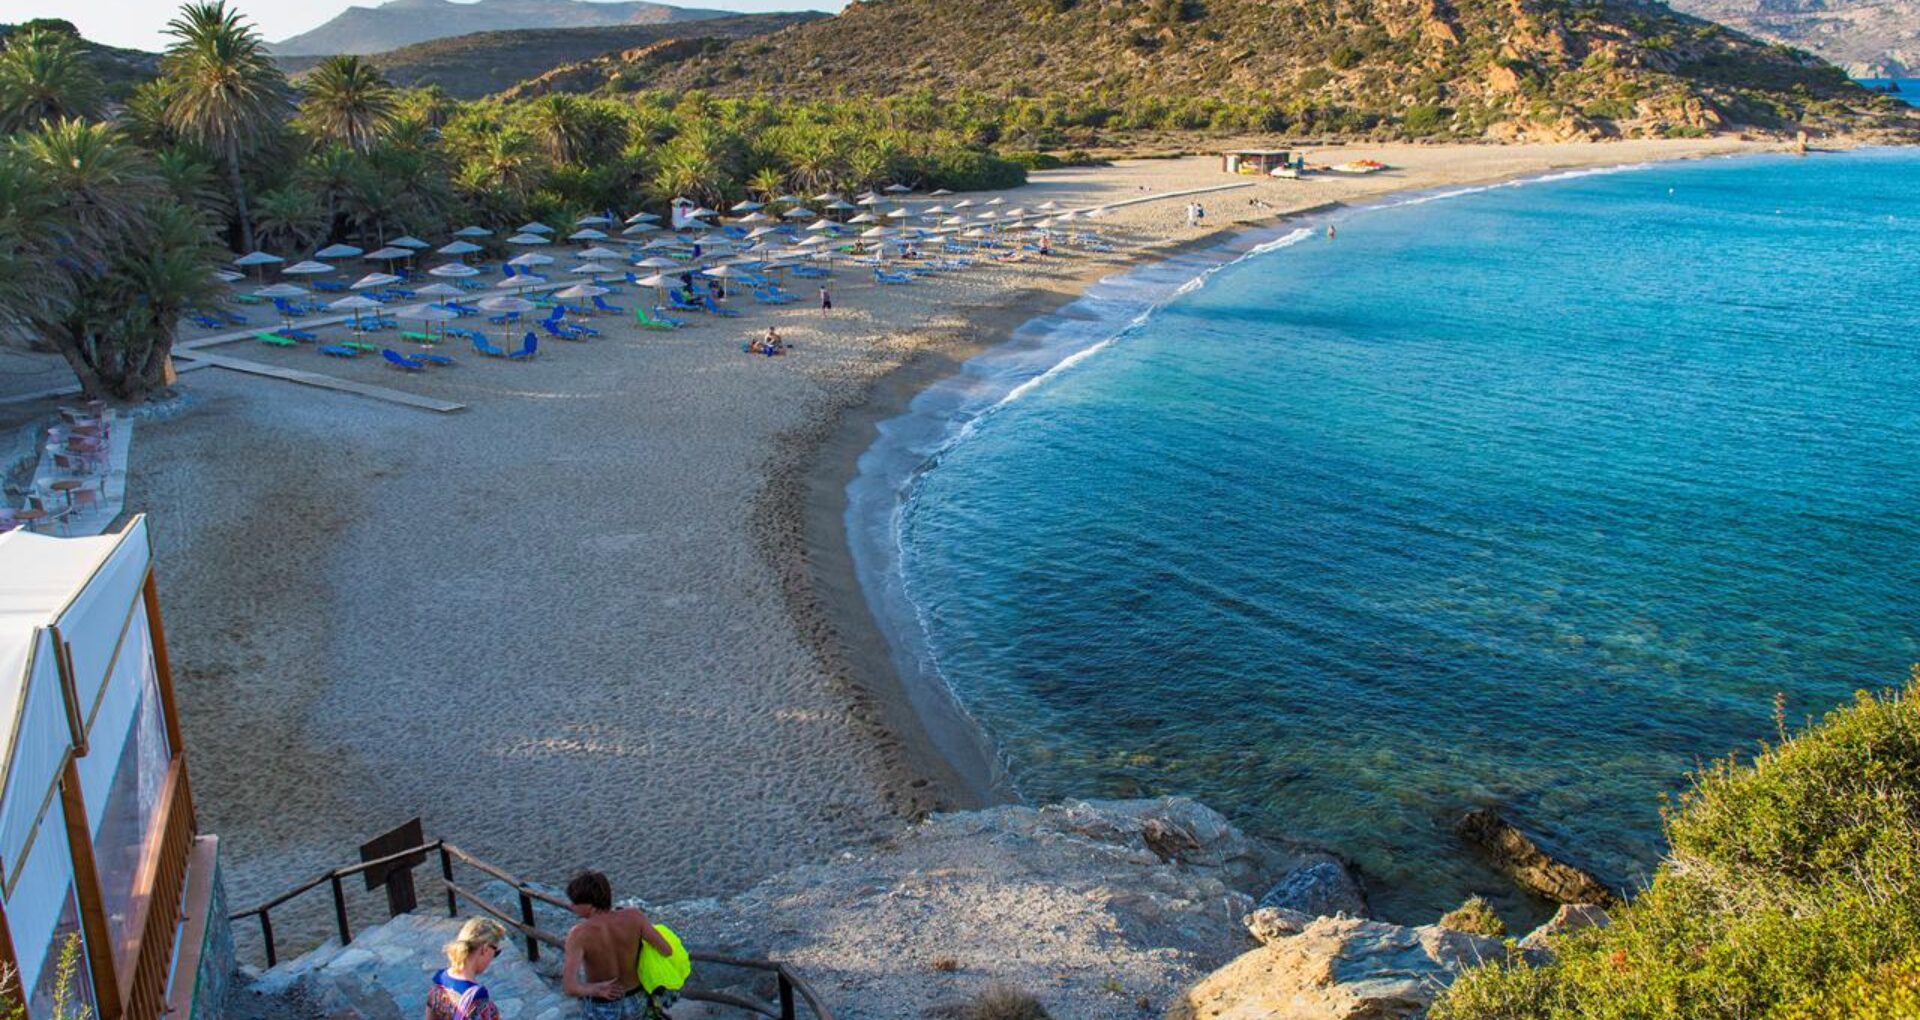 Strand på Kreta